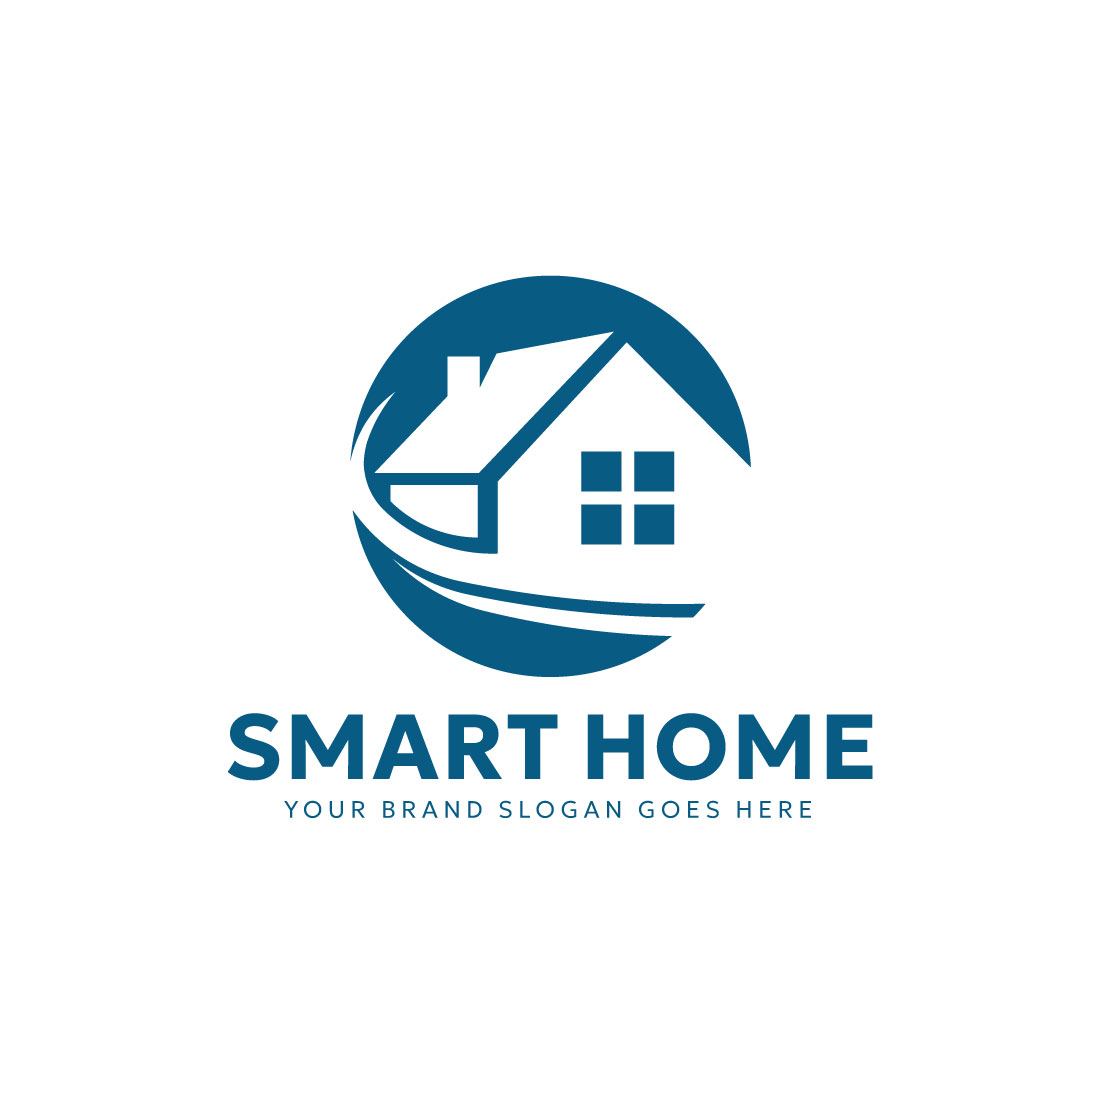 Smart Home Logo design cover image.